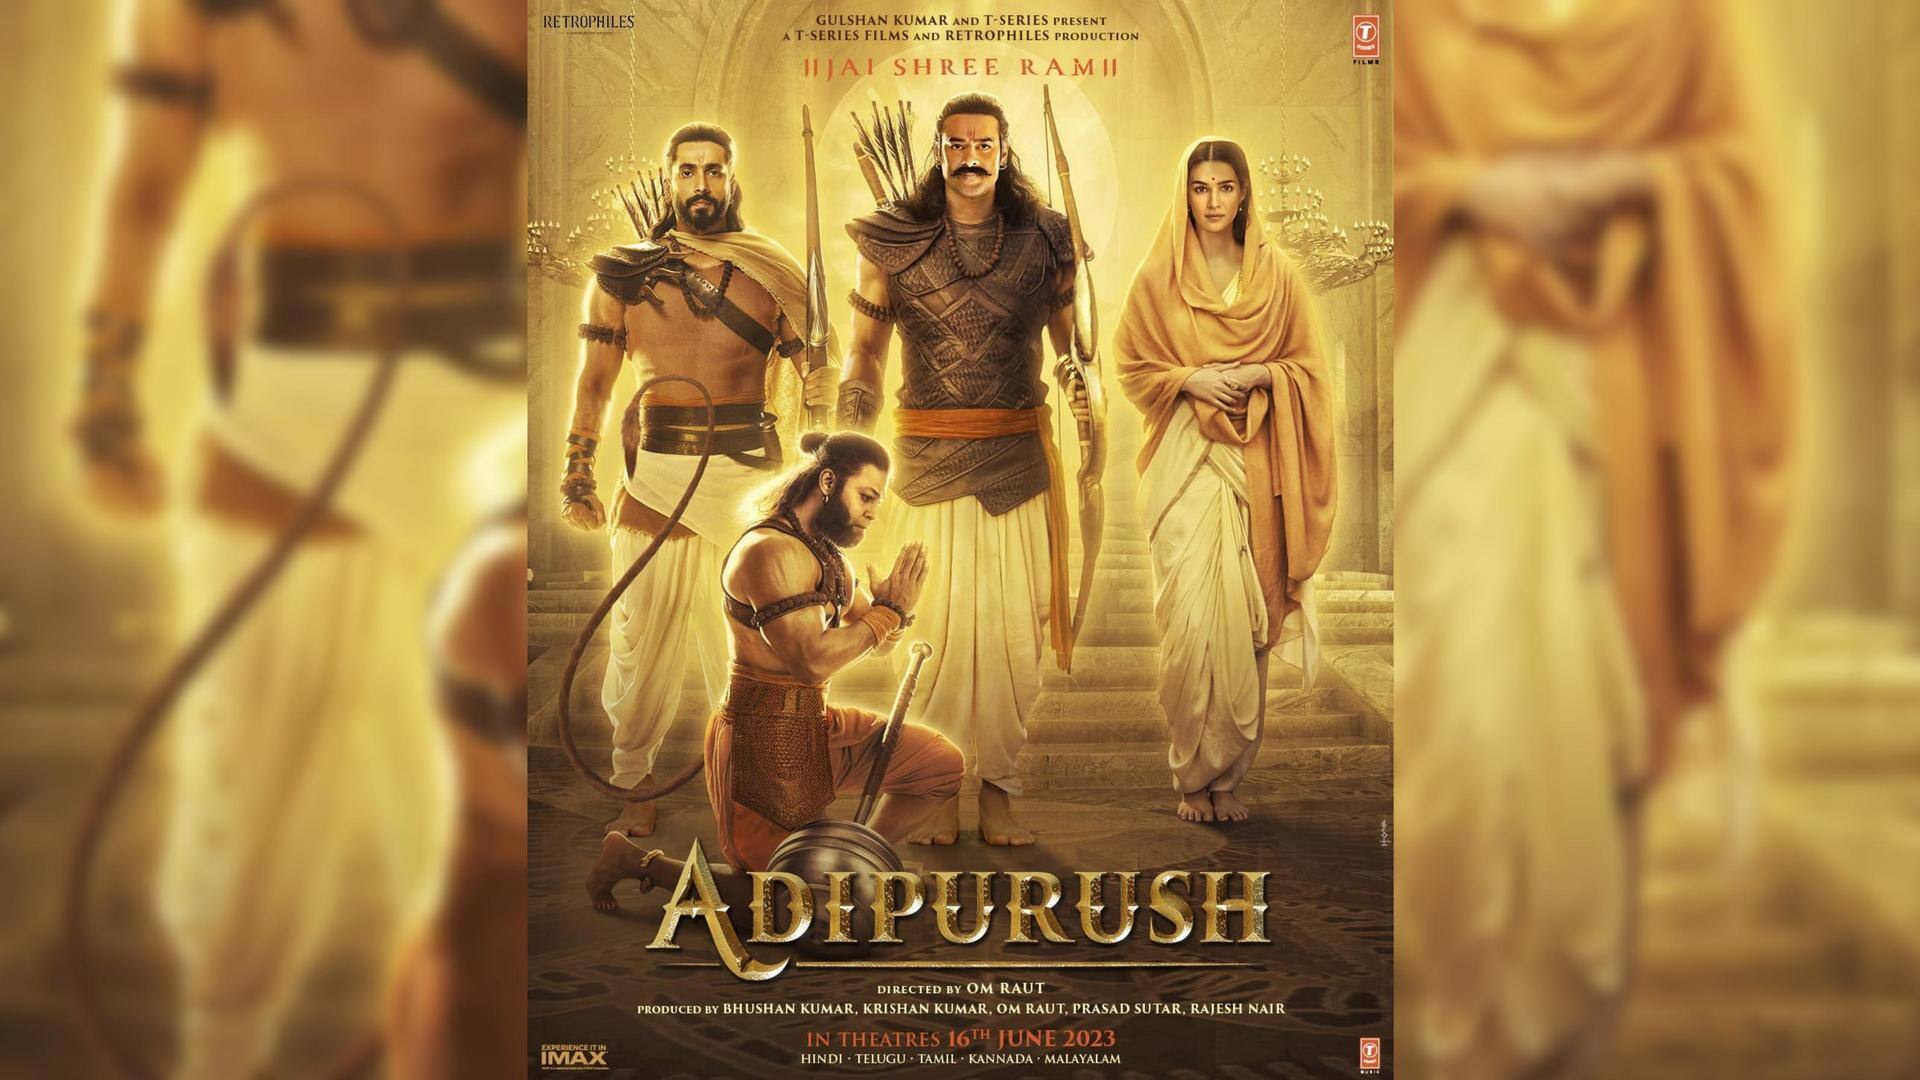 Prabhas-Kriti Sanon starrer 'Adipurush's new poster leaves fans divided